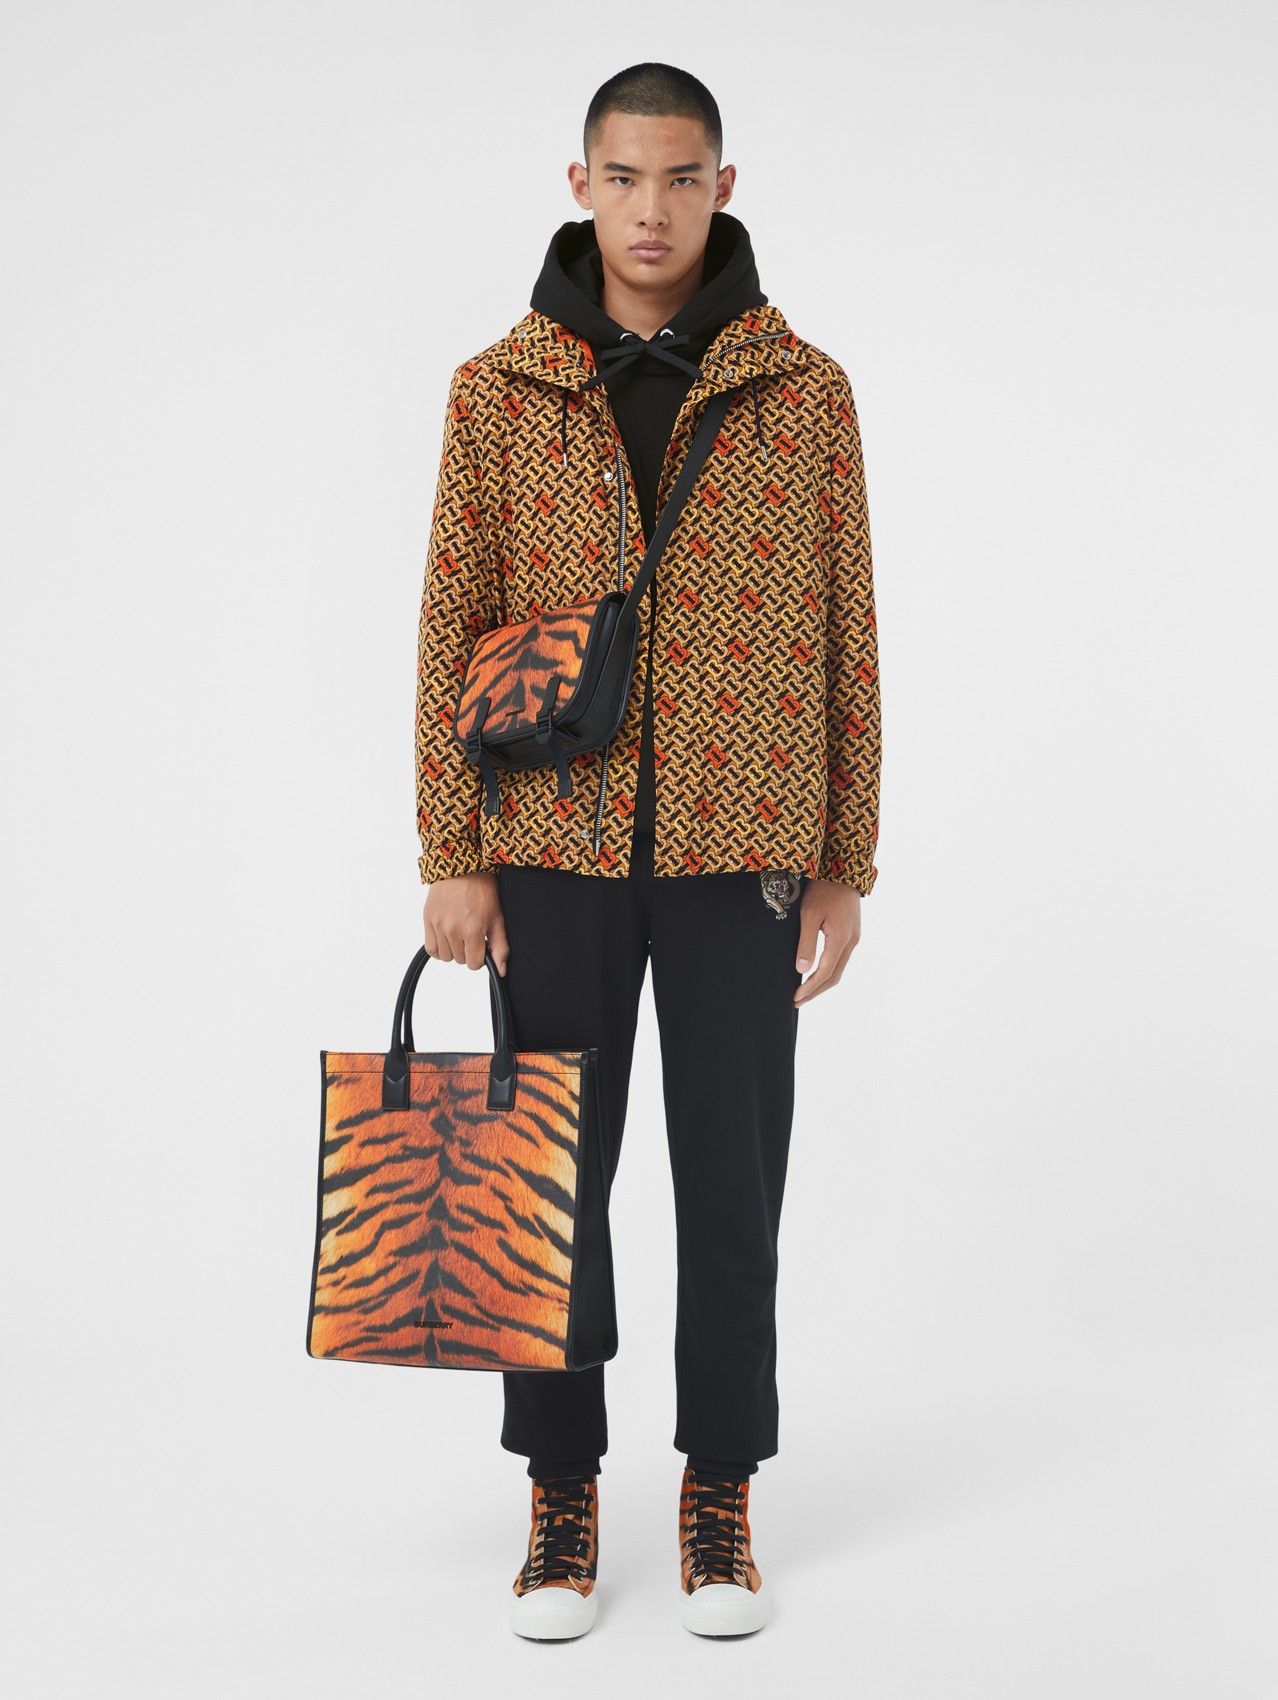 Tiger Print Messenger Bag in Black/orange